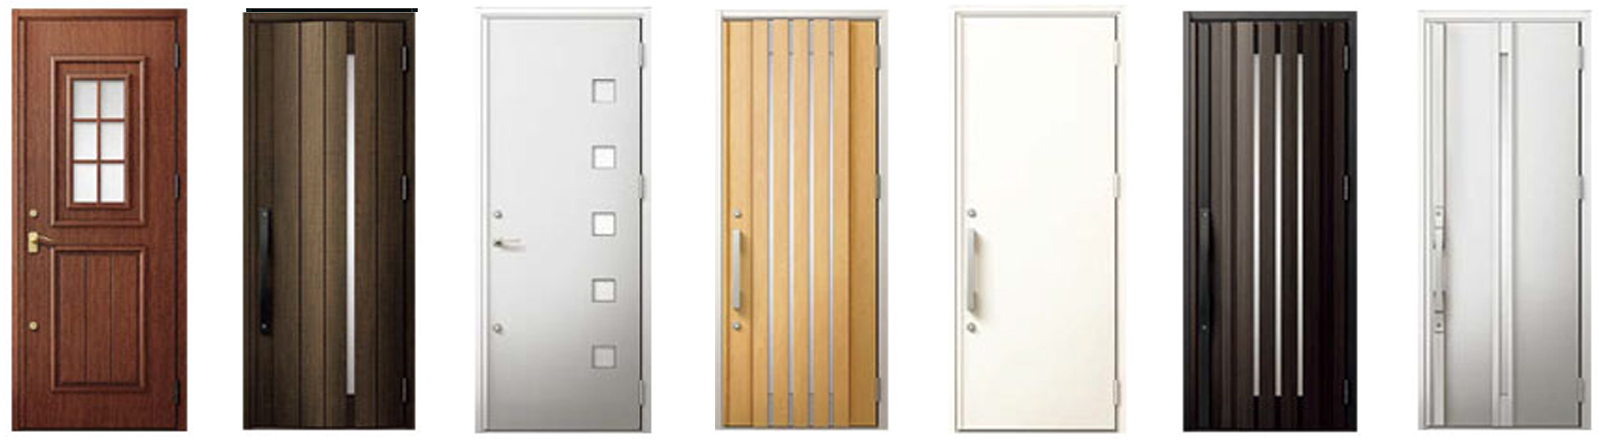 棲家スマートプラス おしゃれなデザインと防犯性に配慮した断熱玄関ドア